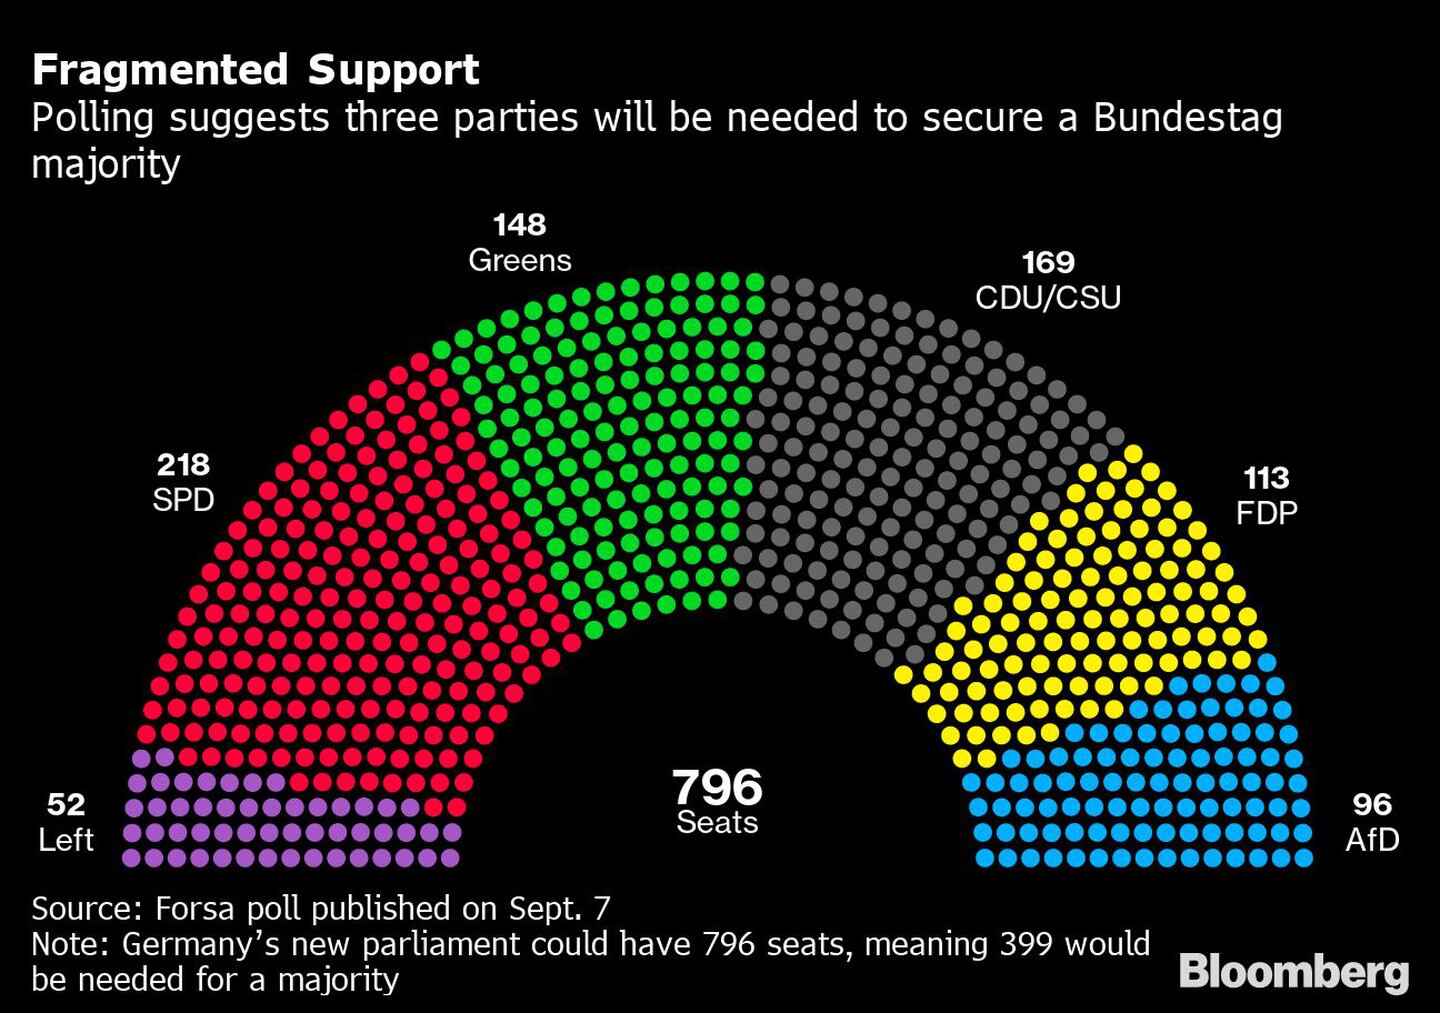 Poling sugiere que se necesitarán tres para asegurar la mayoría del Bundestag.dfd